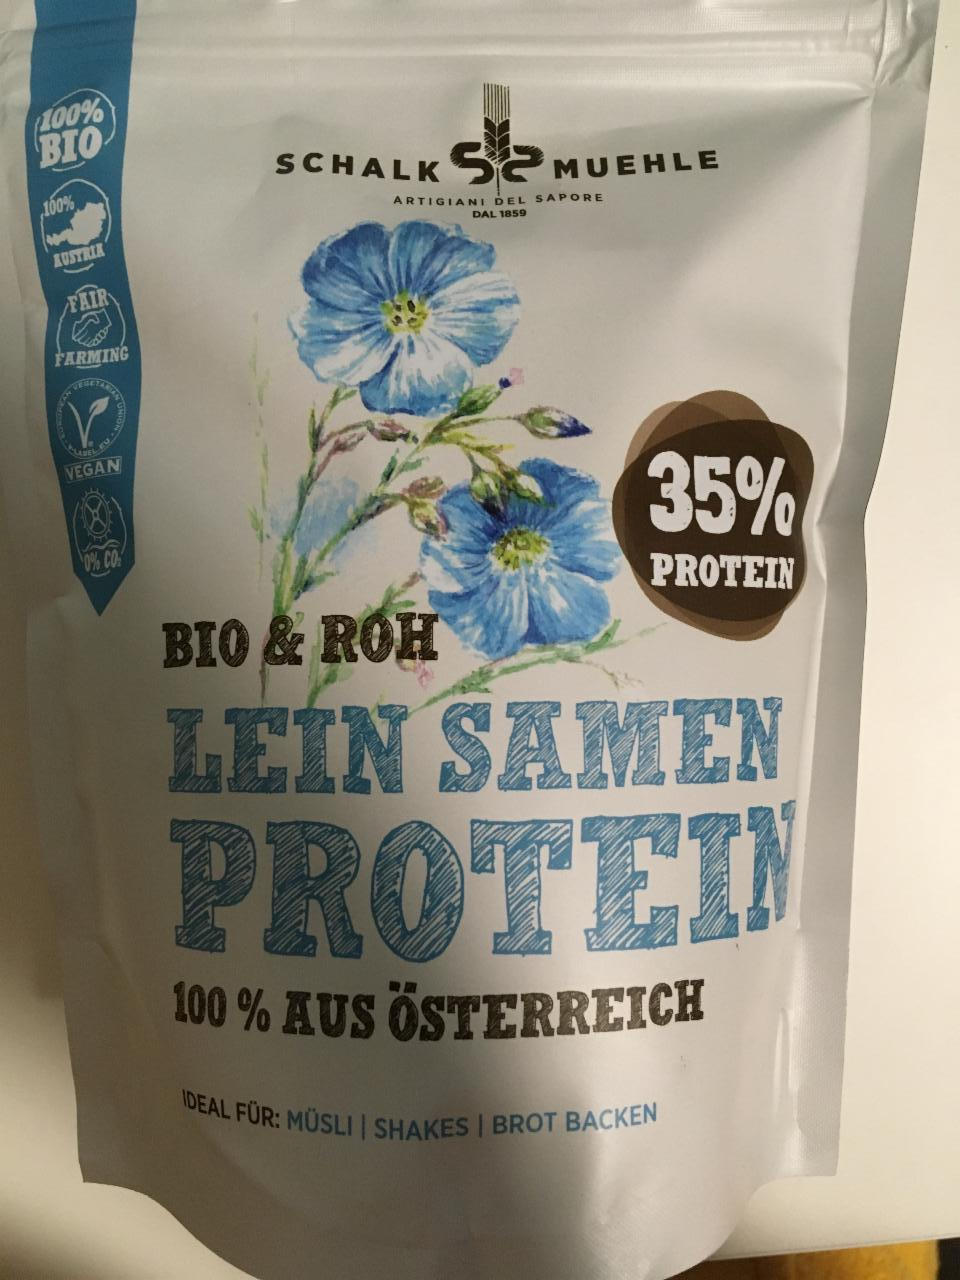 Fotografie - Bio & Roh Leinsamen Protein Schalk Mühle